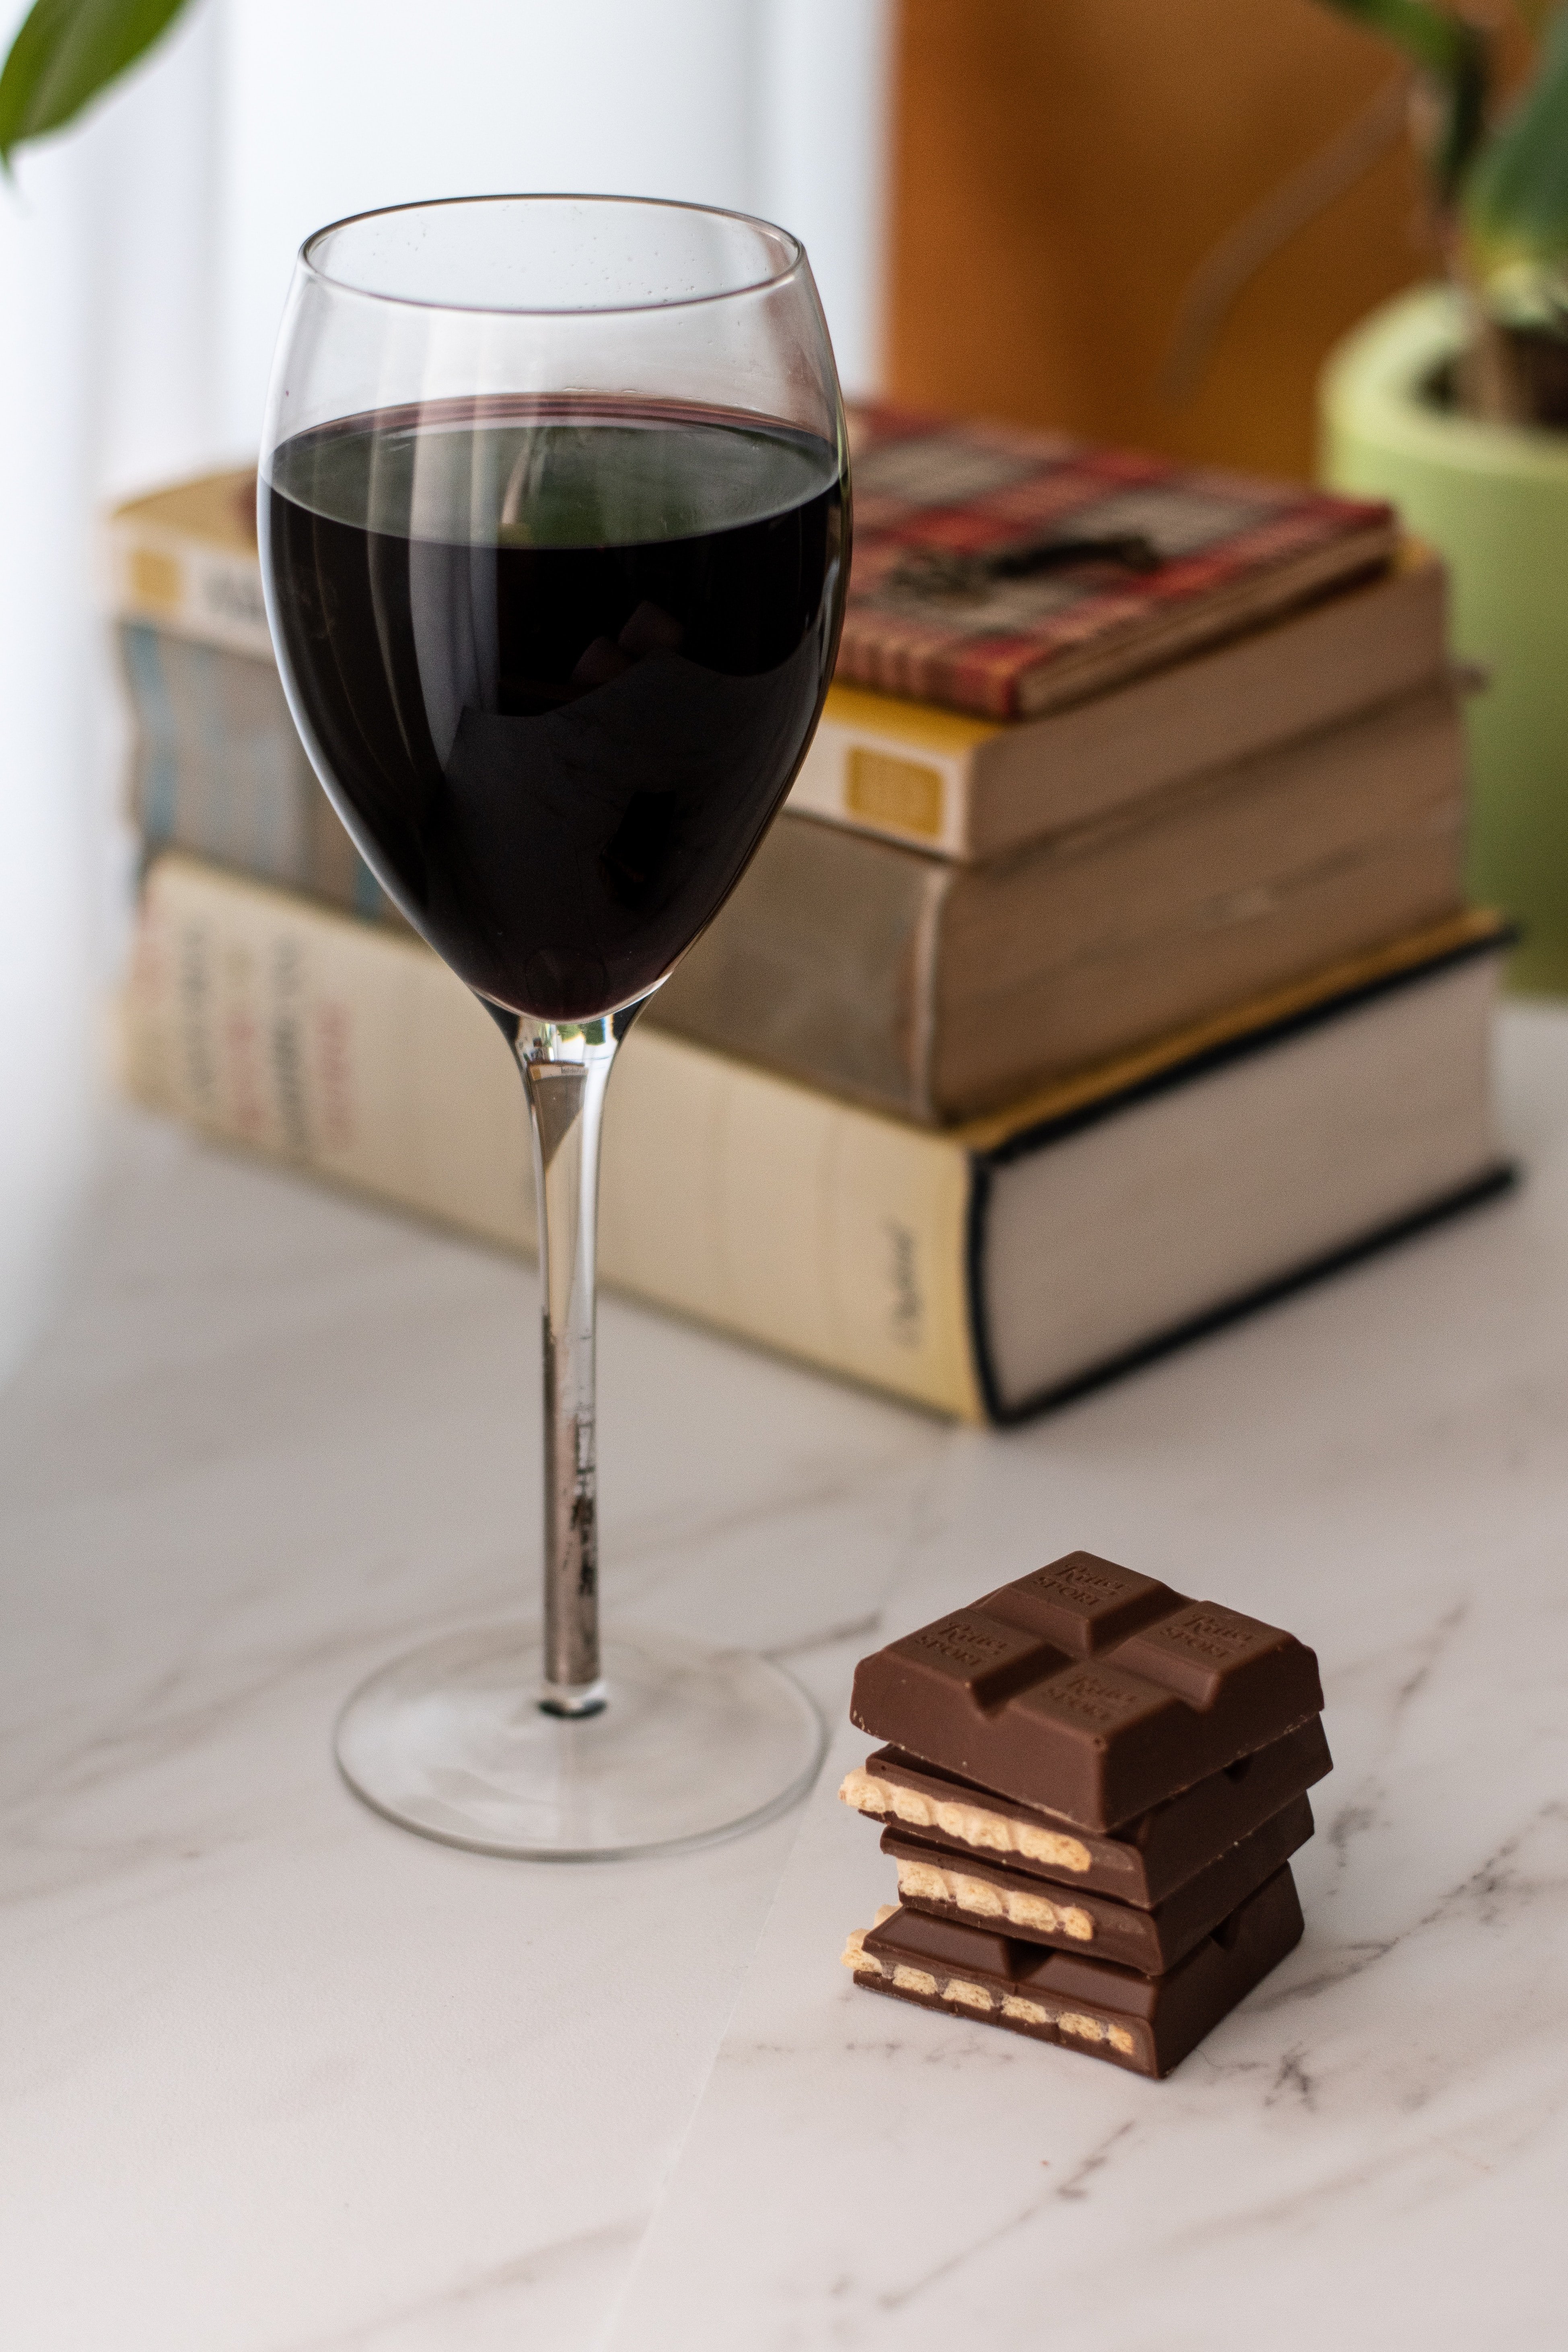 Vi i xocolata: aprèn a maridar-los amb aquests senzills consells